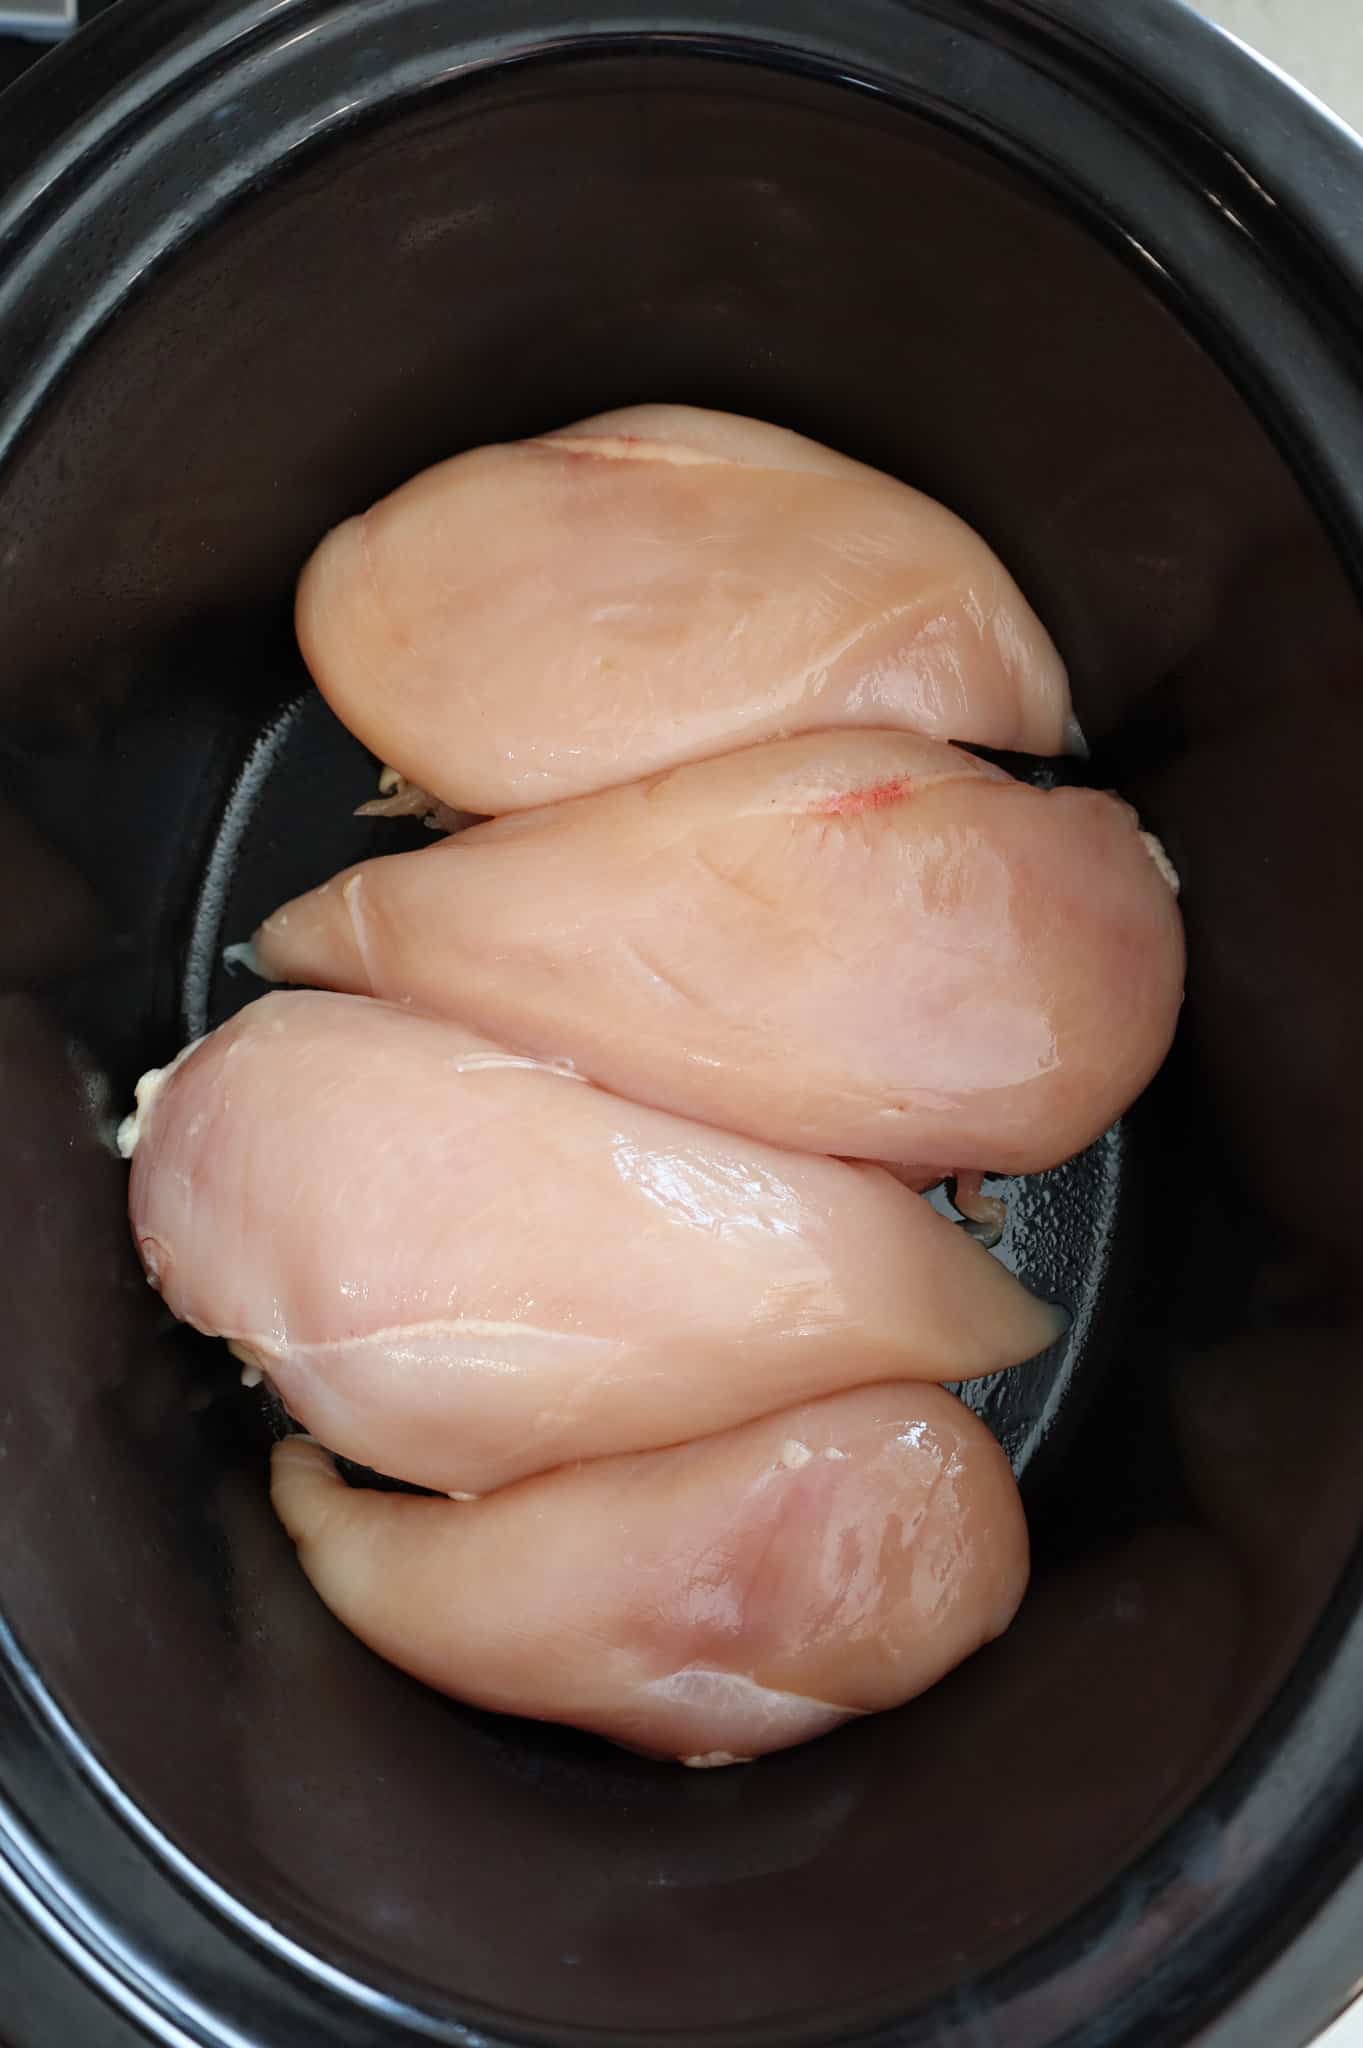 boneless, skinless chicken breasts in a Crock Pot